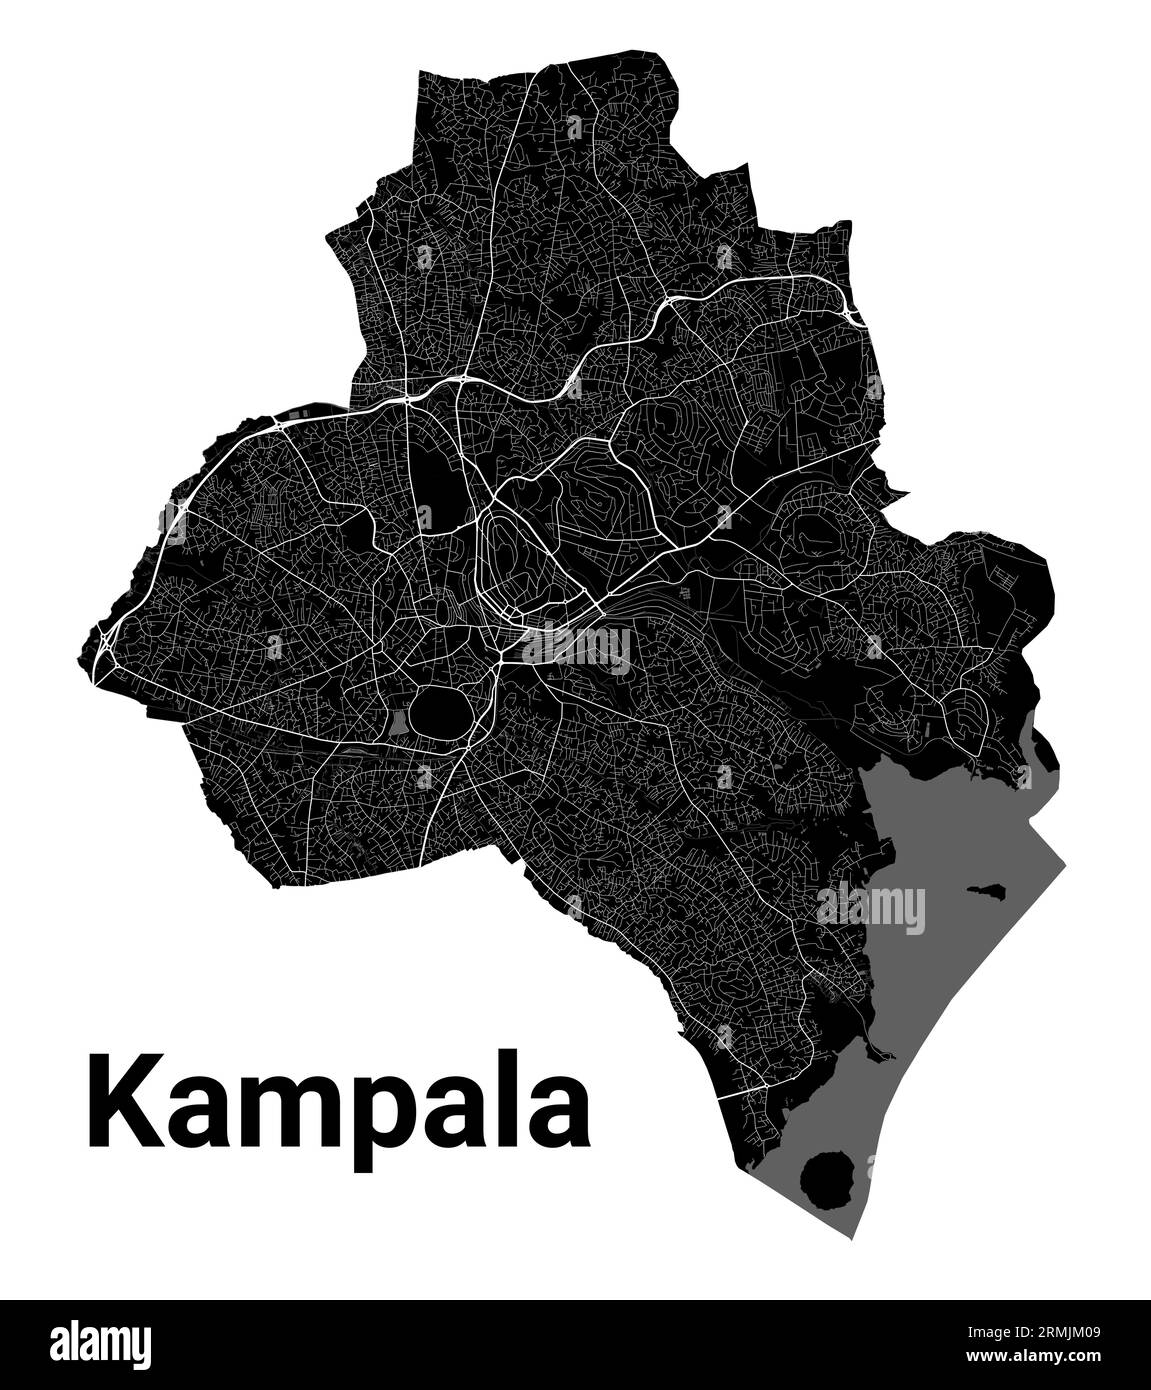 Kampala, Uganda carte. Carte noire détaillée de la zone administrative de la ville de Kampala. Affiche du paysage urbain vue sur l'aria métropolitaine. Terre noire avec des routes blanches et Illustration de Vecteur